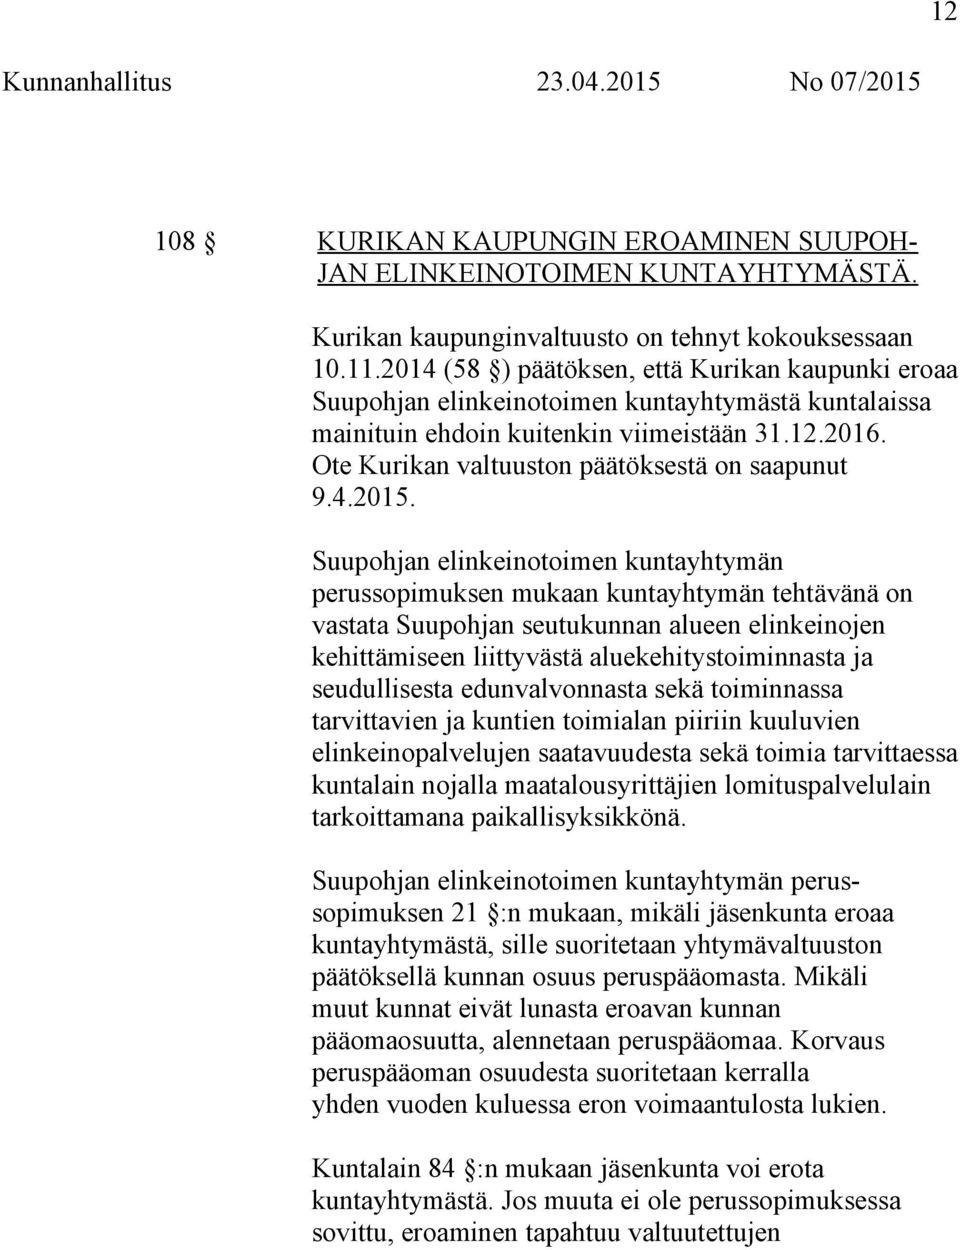 Ote Kurikan valtuuston päätöksestä on saapunut 9.4.2015.